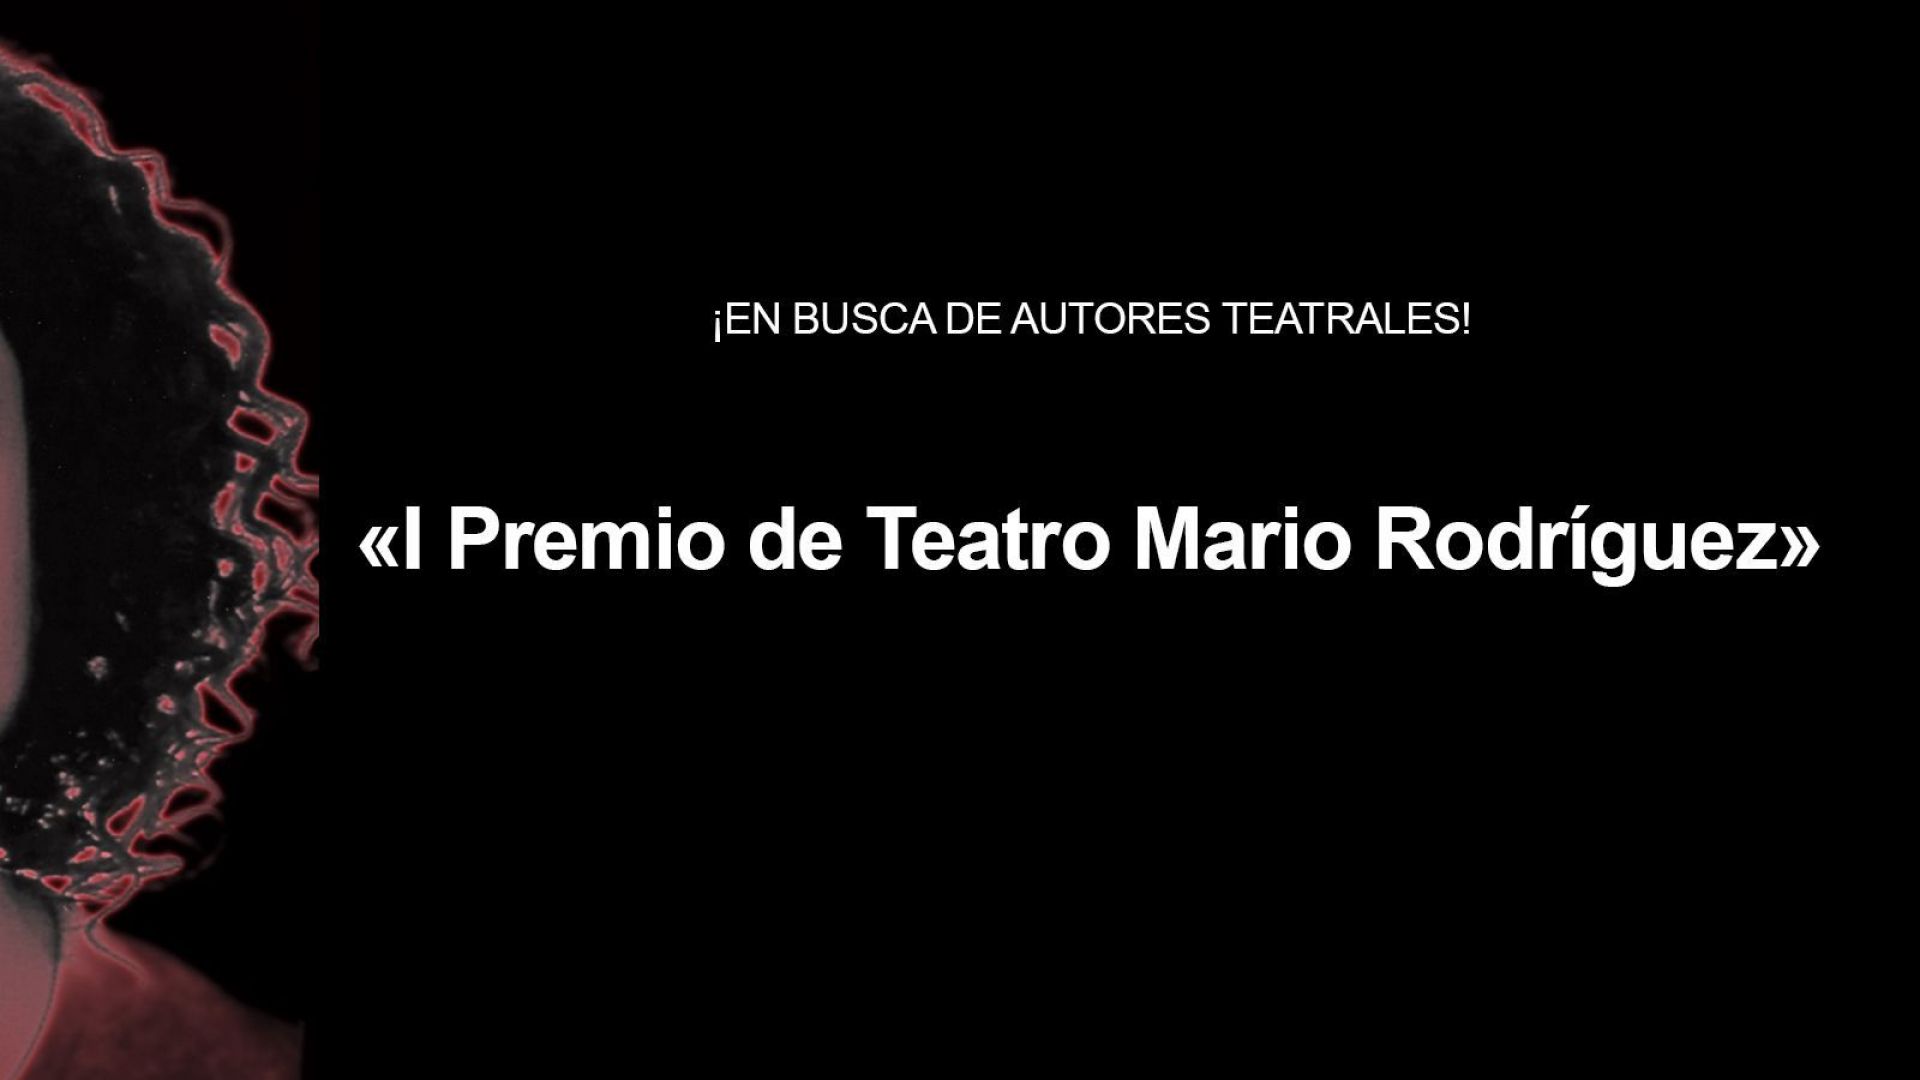 Resultado del Primer Premio de Teatro Mario Rodríguez